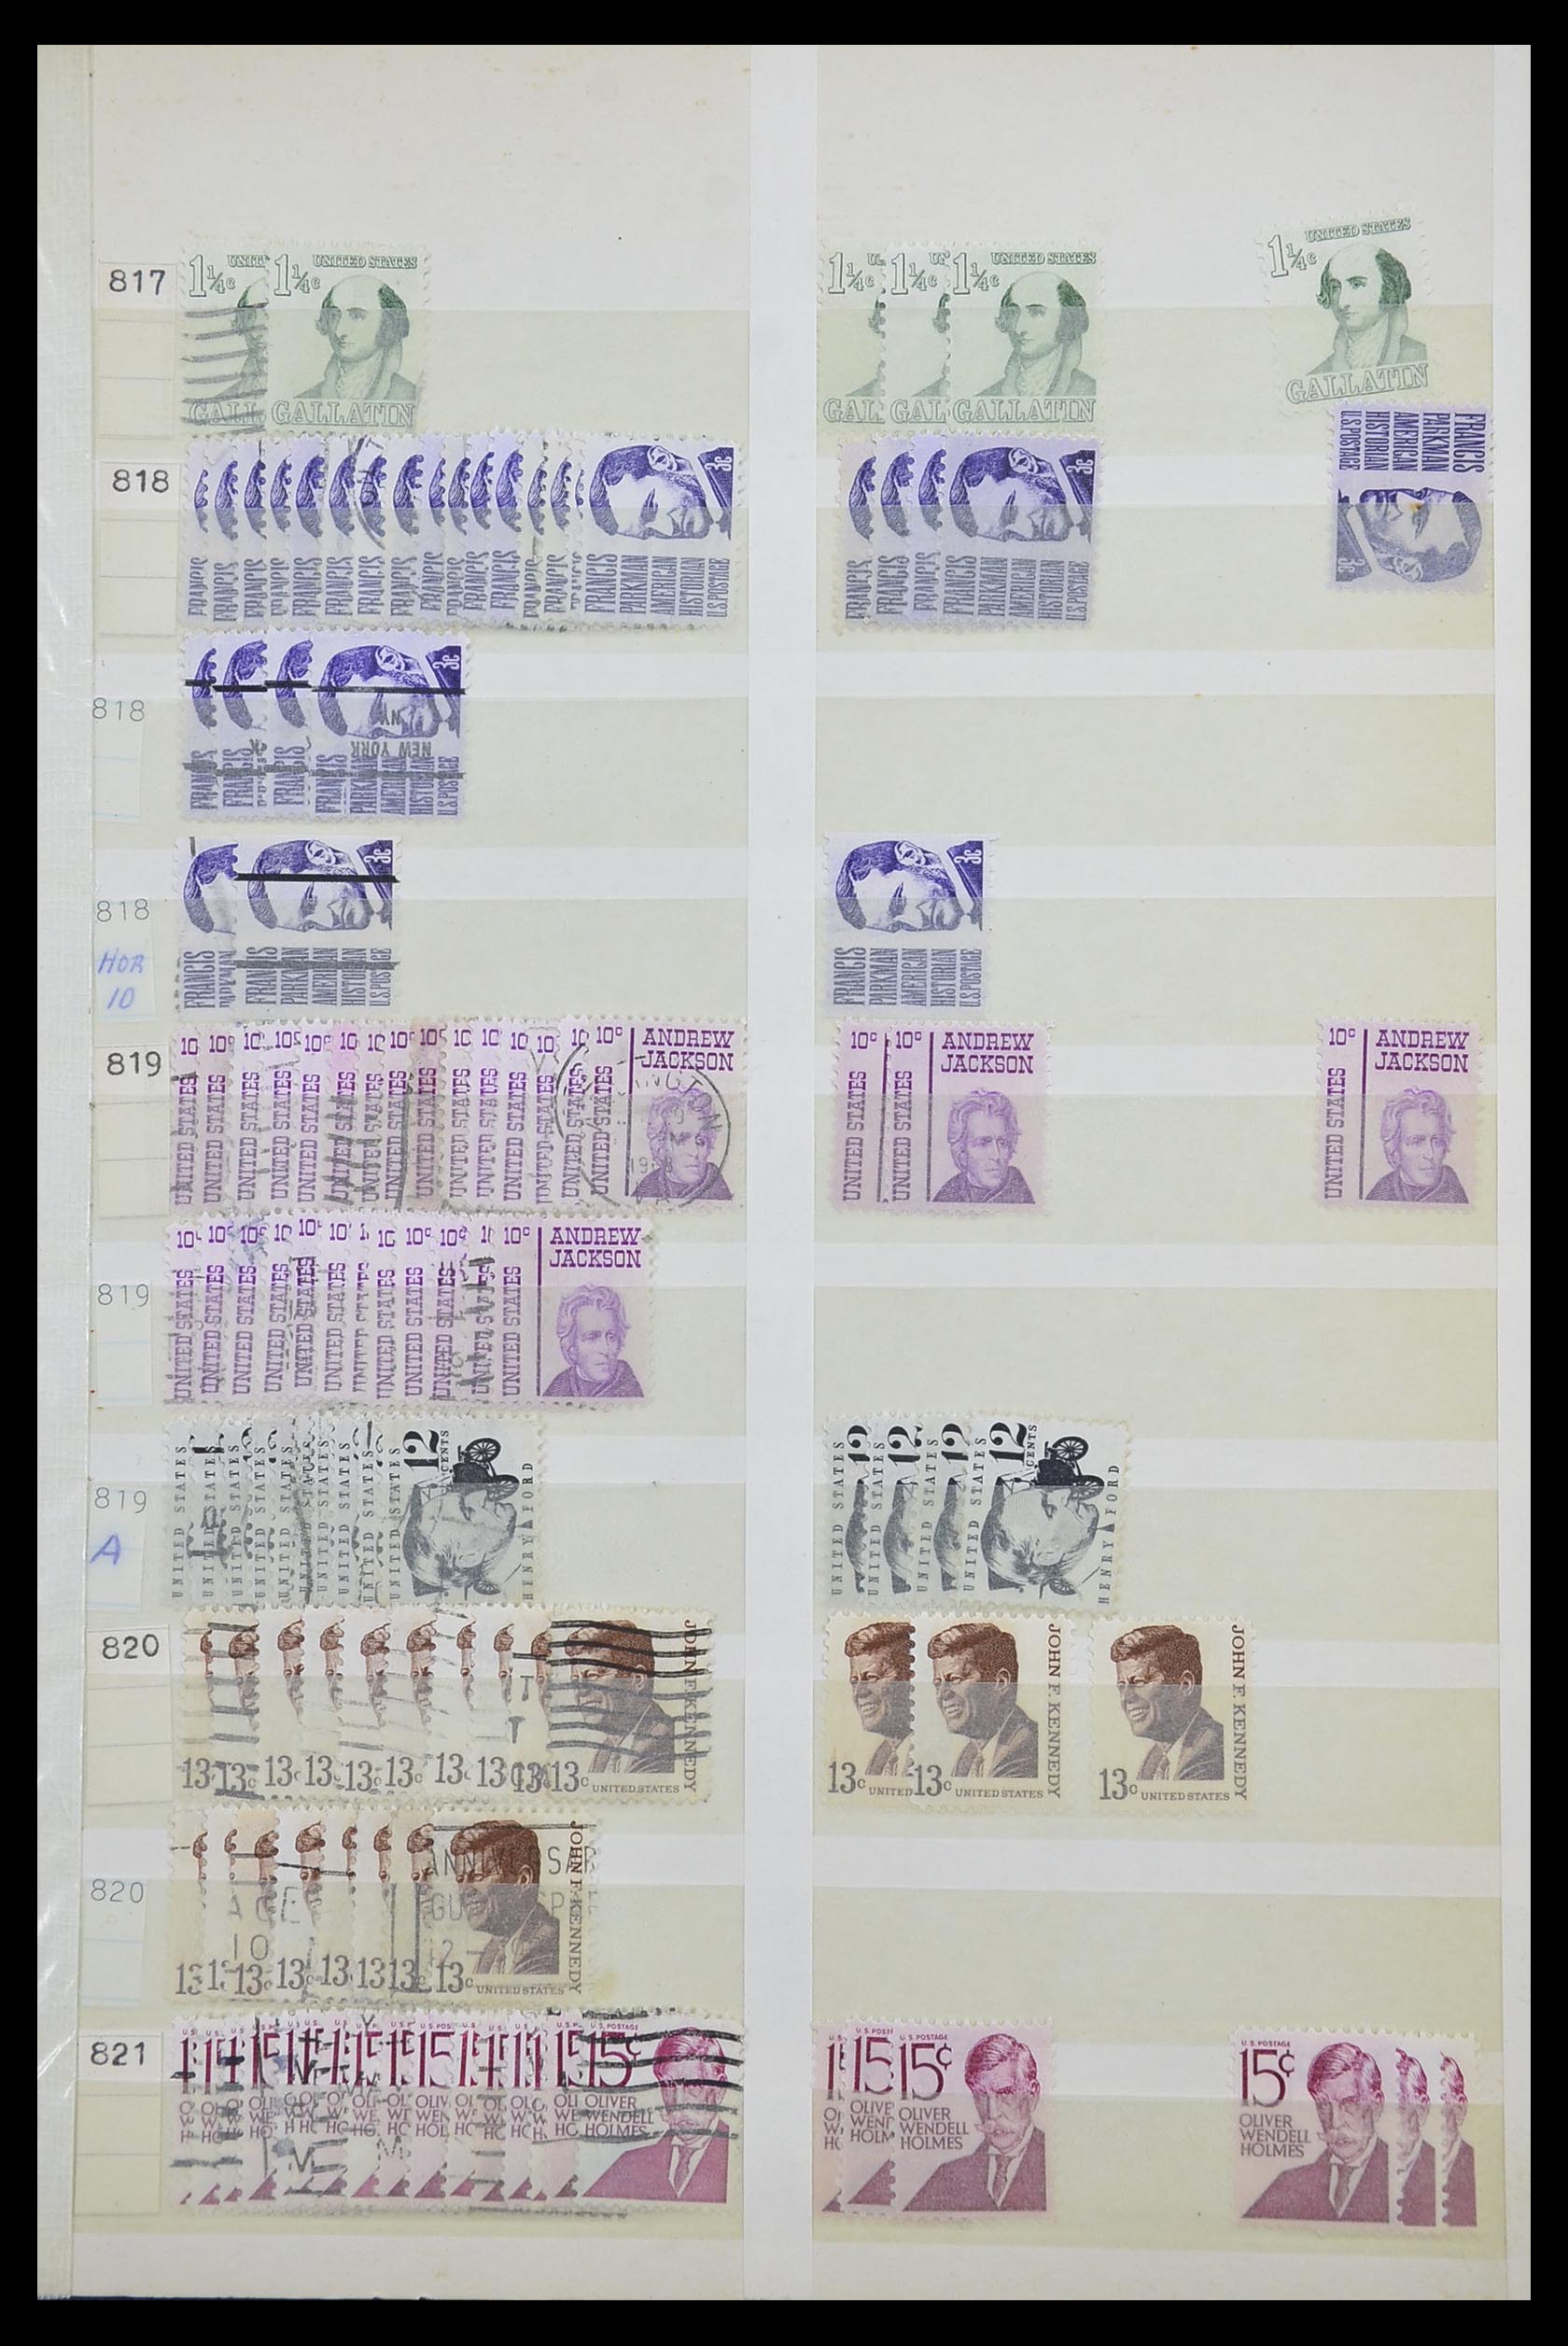 33857 019 - Stamp collection 33857 USA 1959-1988.